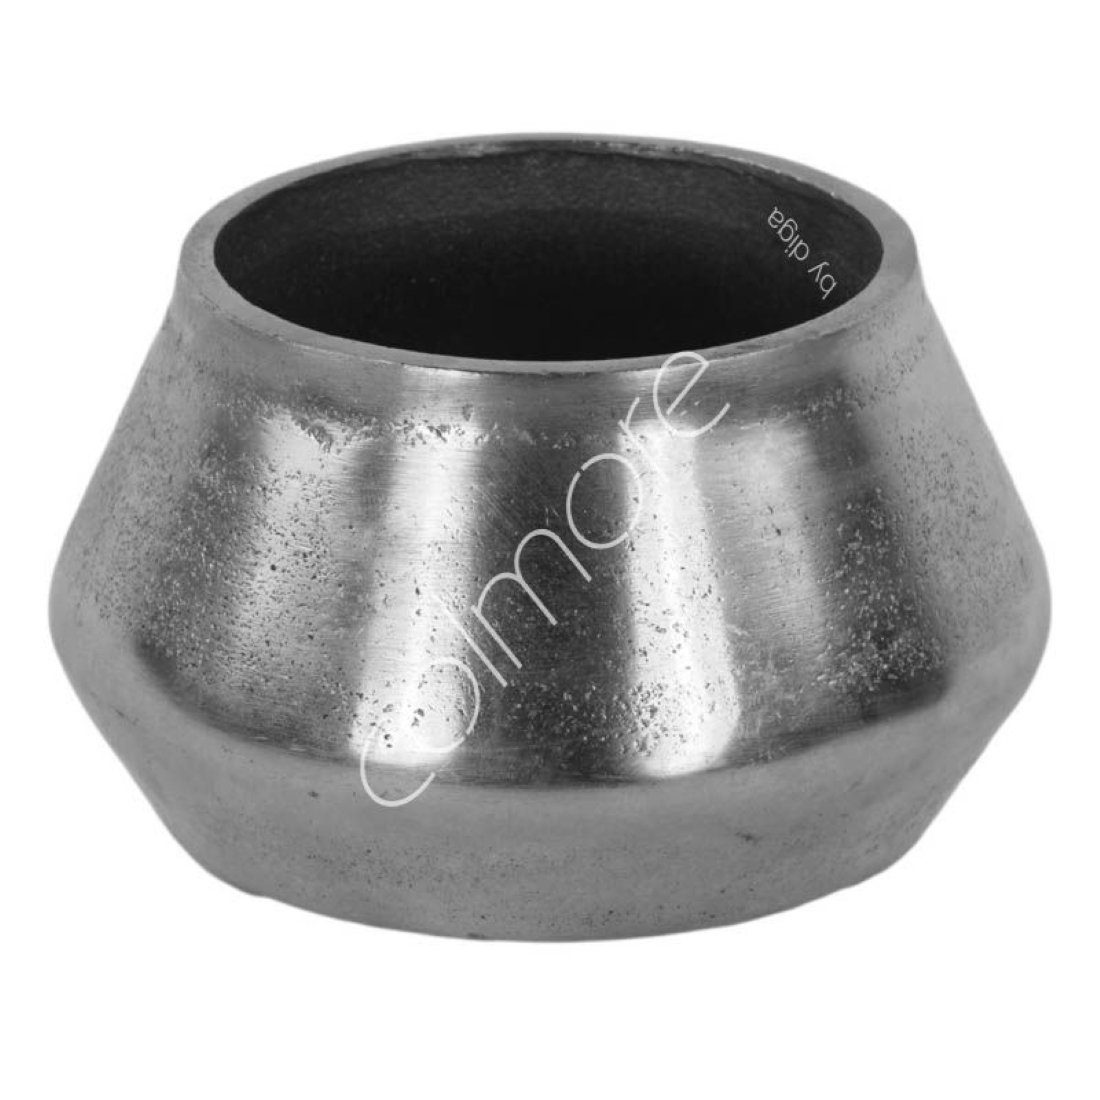 Vase Metall Silber Deko colmore 9x9x13 Dekovase Tisch Klein cm Rund Retro